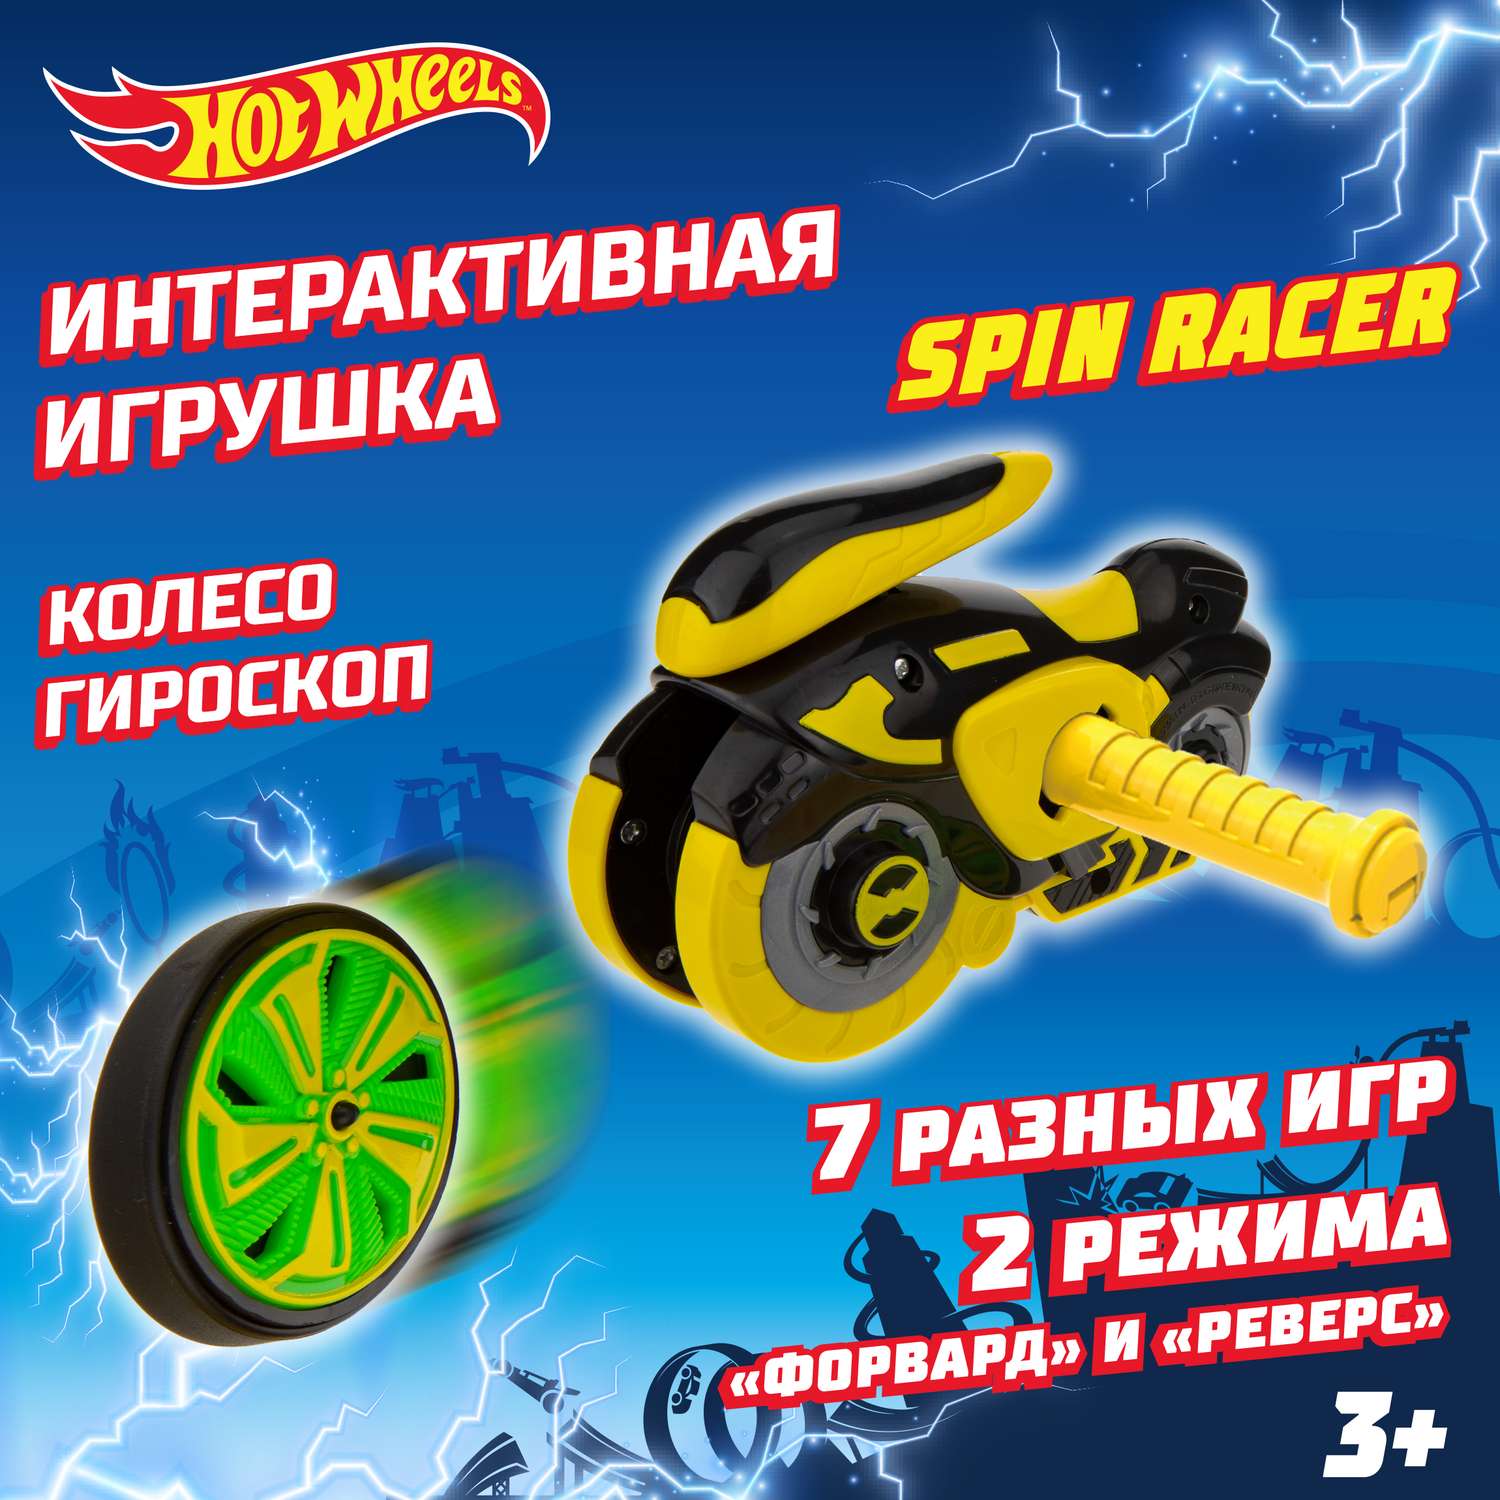 Игровой набор Hot Wheels Spin Racer Желтый Призрак игрушечный мотоцикл с колесом-гироскопом Т19371 - фото 1